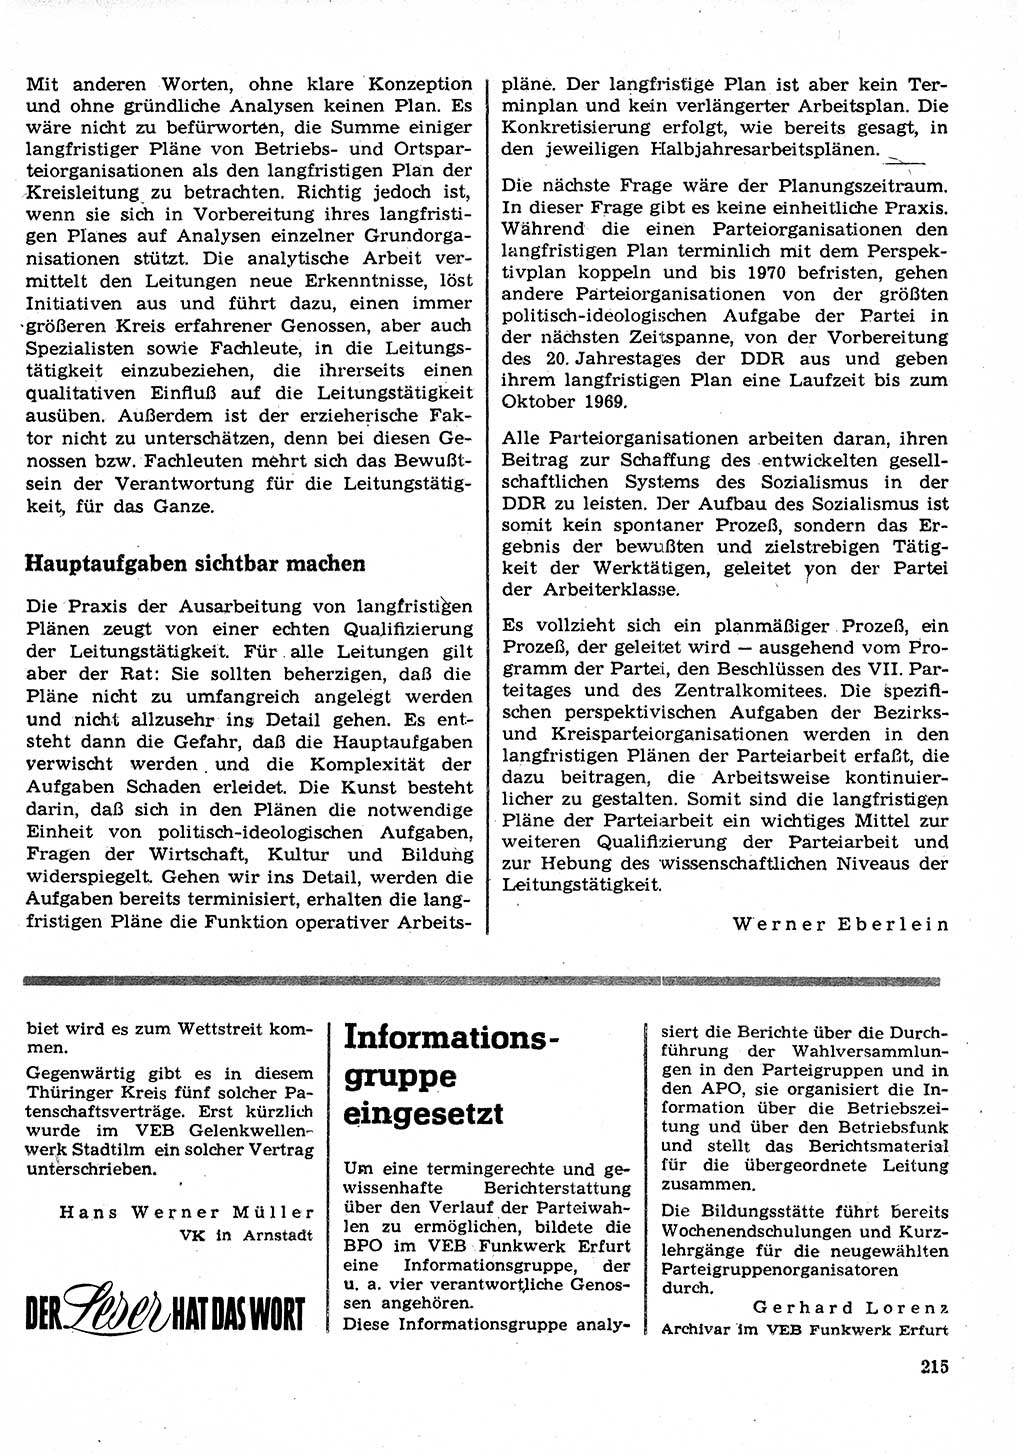 Neuer Weg (NW), Organ des Zentralkomitees (ZK) der SED (Sozialistische Einheitspartei Deutschlands) für Fragen des Parteilebens, 23. Jahrgang [Deutsche Demokratische Republik (DDR)] 1968, Seite 215 (NW ZK SED DDR 1968, S. 215)